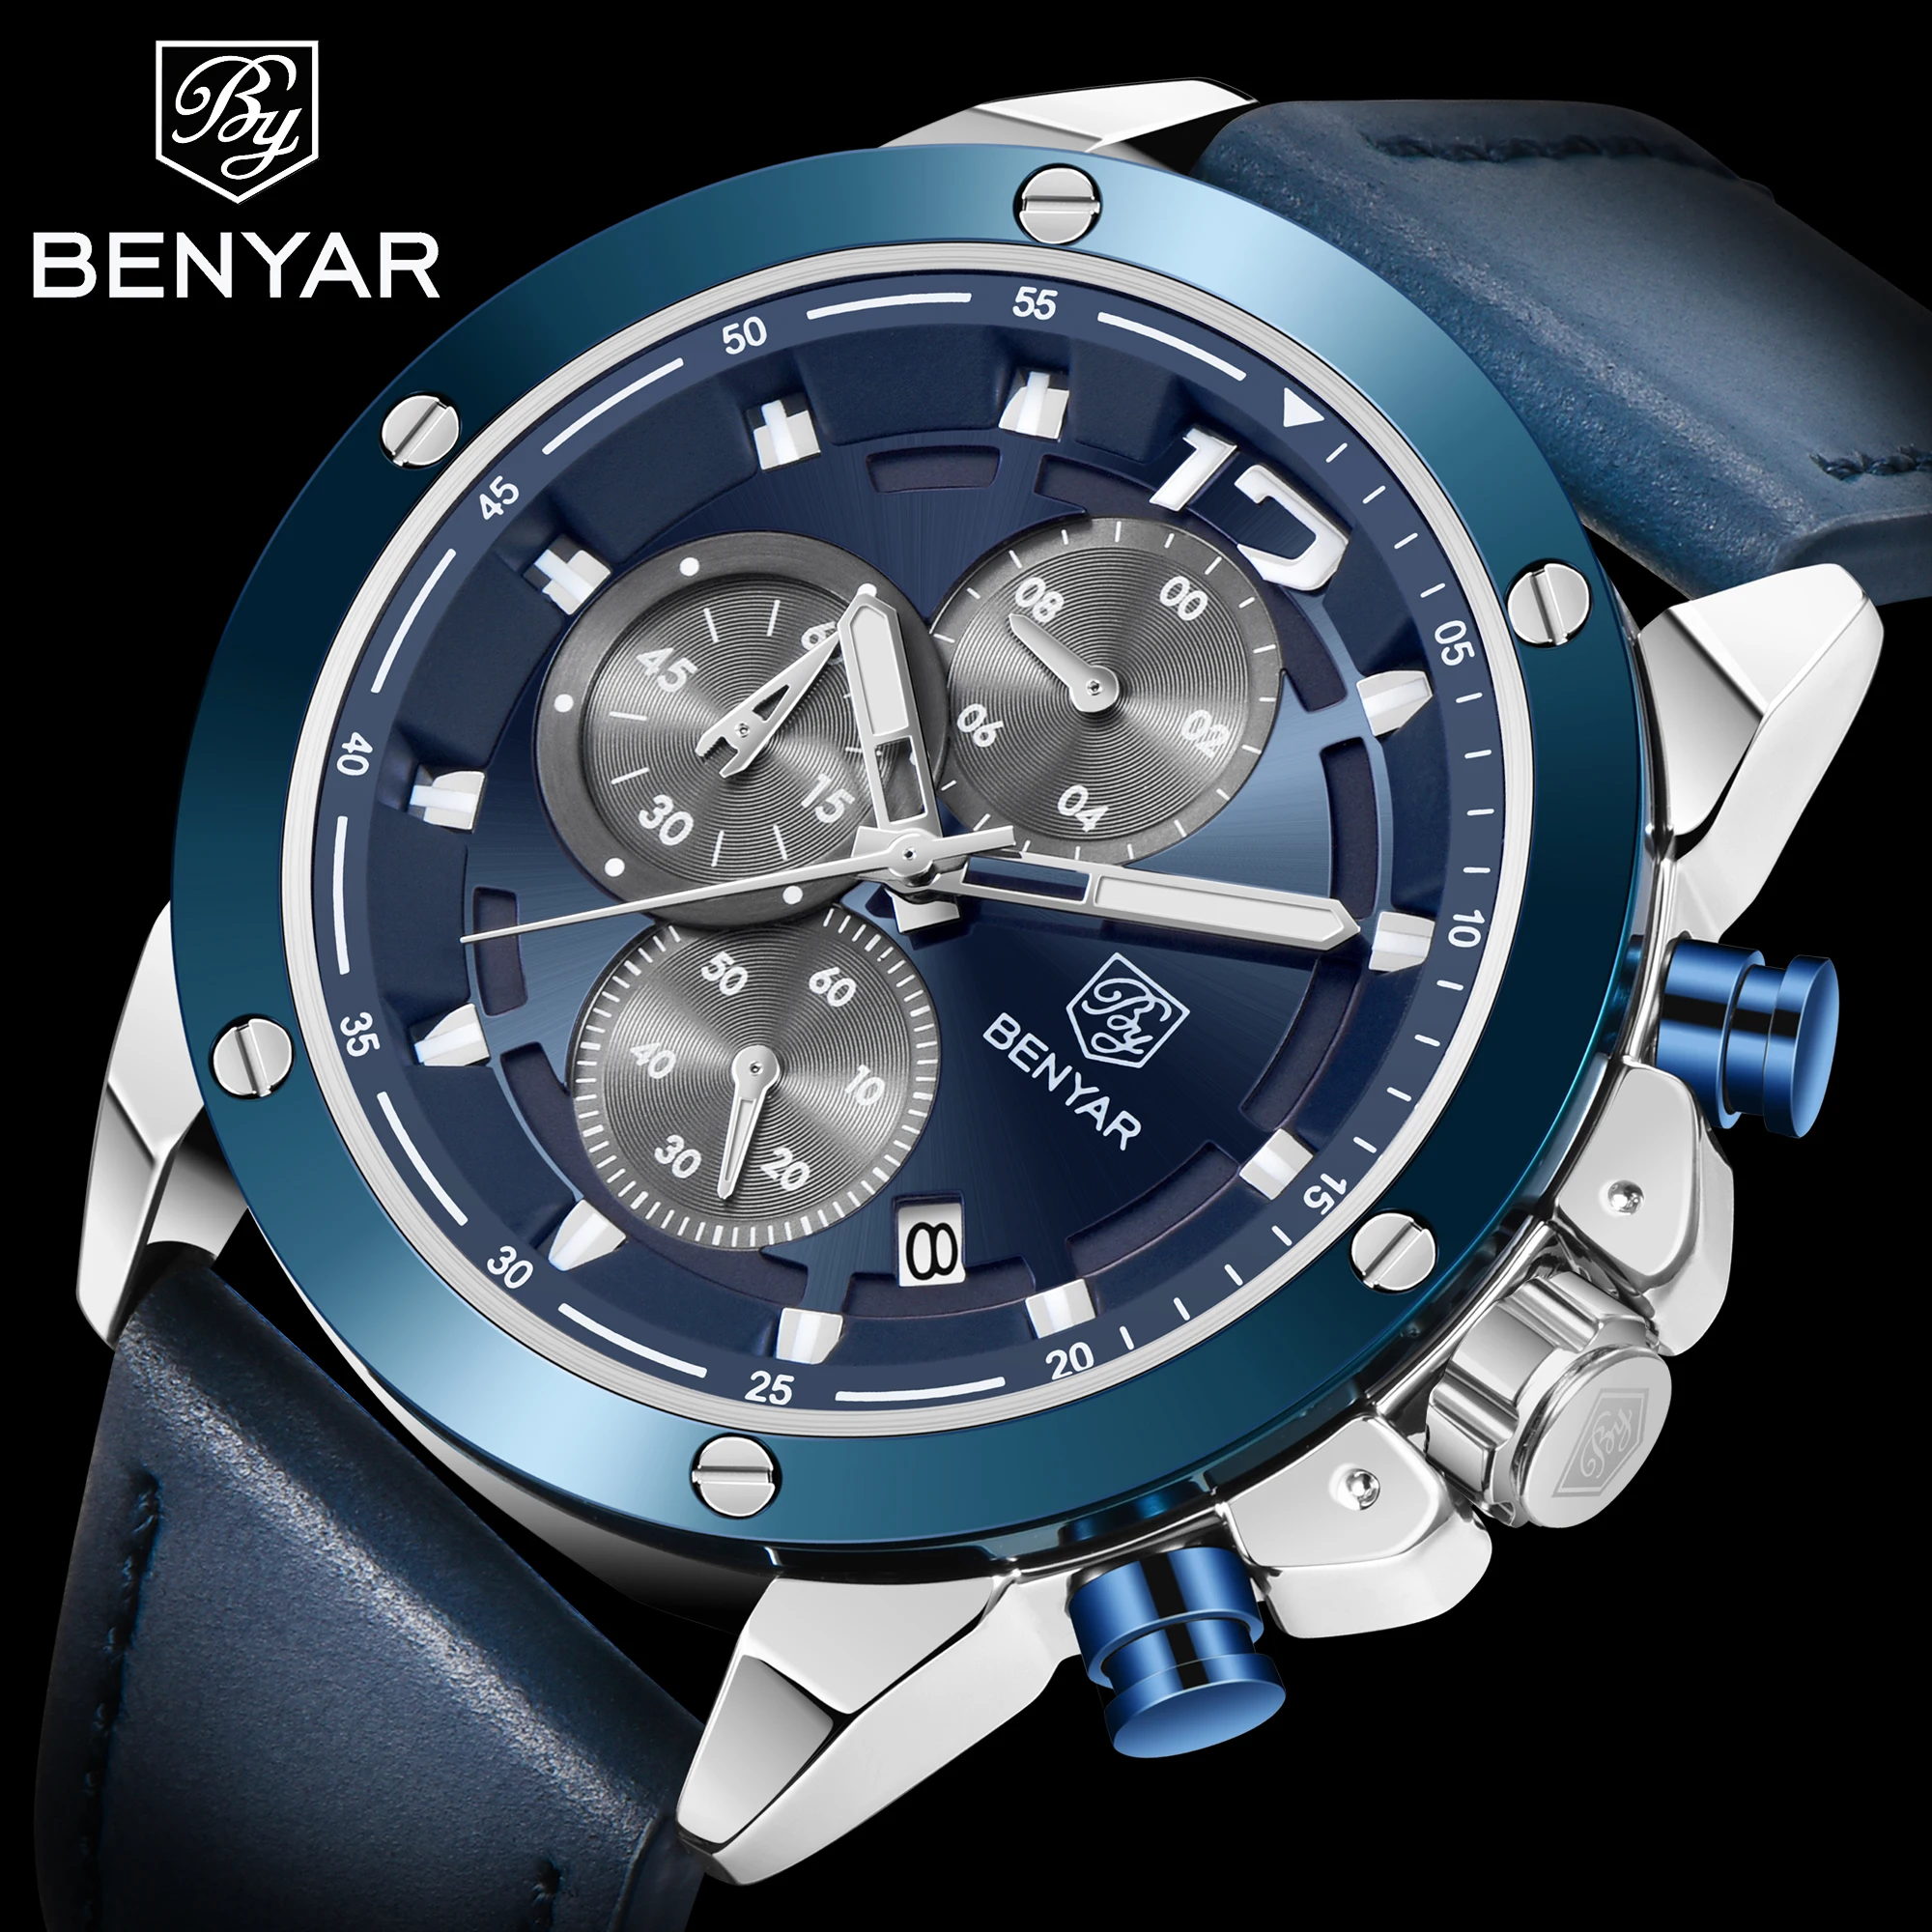 2020 New Relogio Masculino BENYAR Top Luxury Brand Men's Watches Multifunction Quartz Sport Chronograph Watches Men Wrist Watch